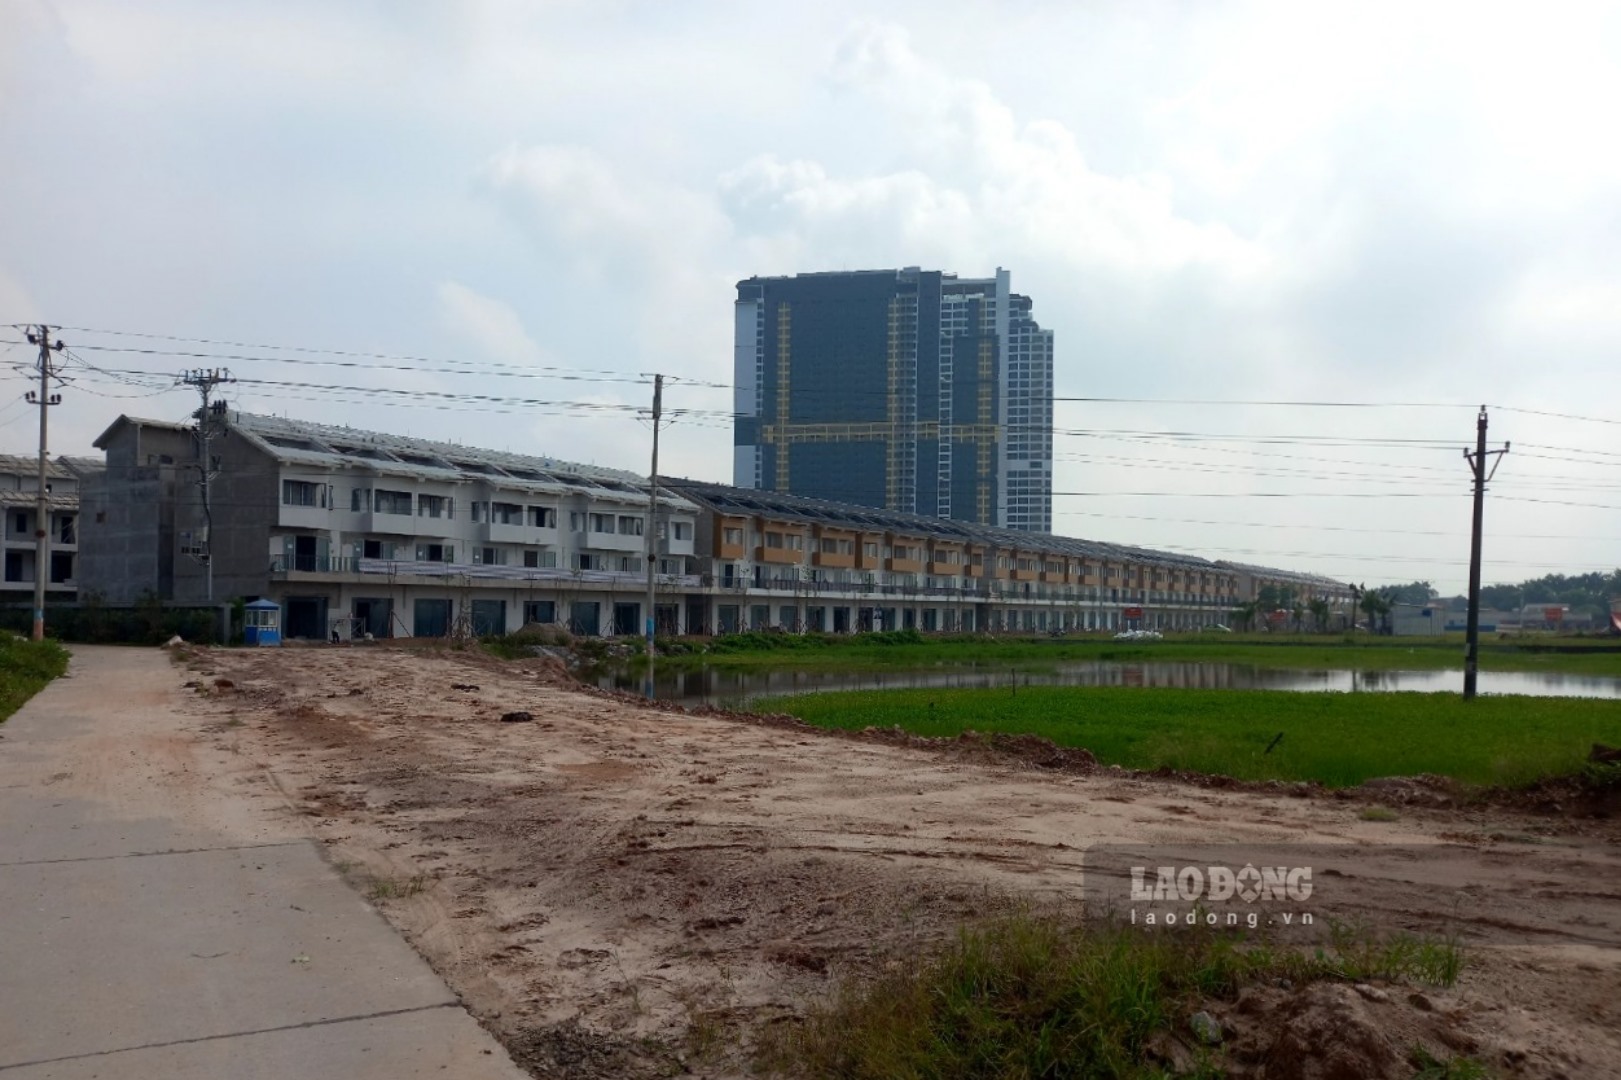 Đầu năm 2022, nhiều địa phương trên địa bàn tỉnh Phú Thọ xuất hiện tình trạng “sốt đất”, giá BĐS tăng nhanh, số lượng giao dịch lớn, nhiều người đã bỏ nghề để đi buôn đất, làm môi giới.